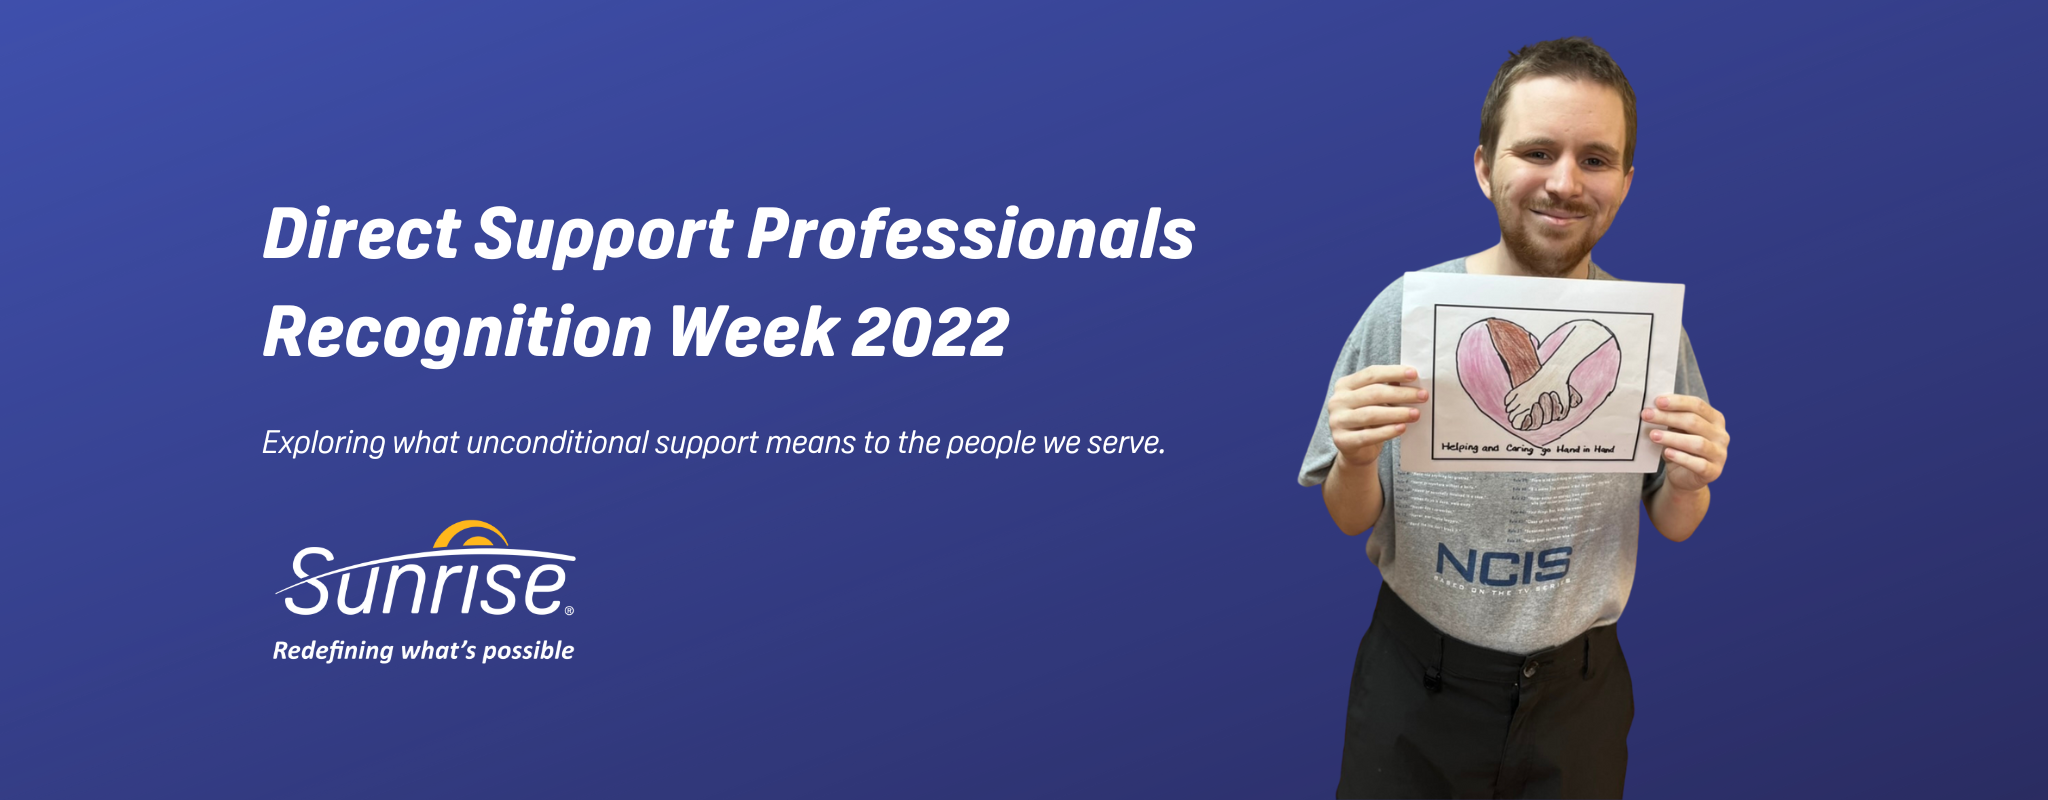 Célébration de la semaine de reconnaissance des professionnels de soutien direct en 2022